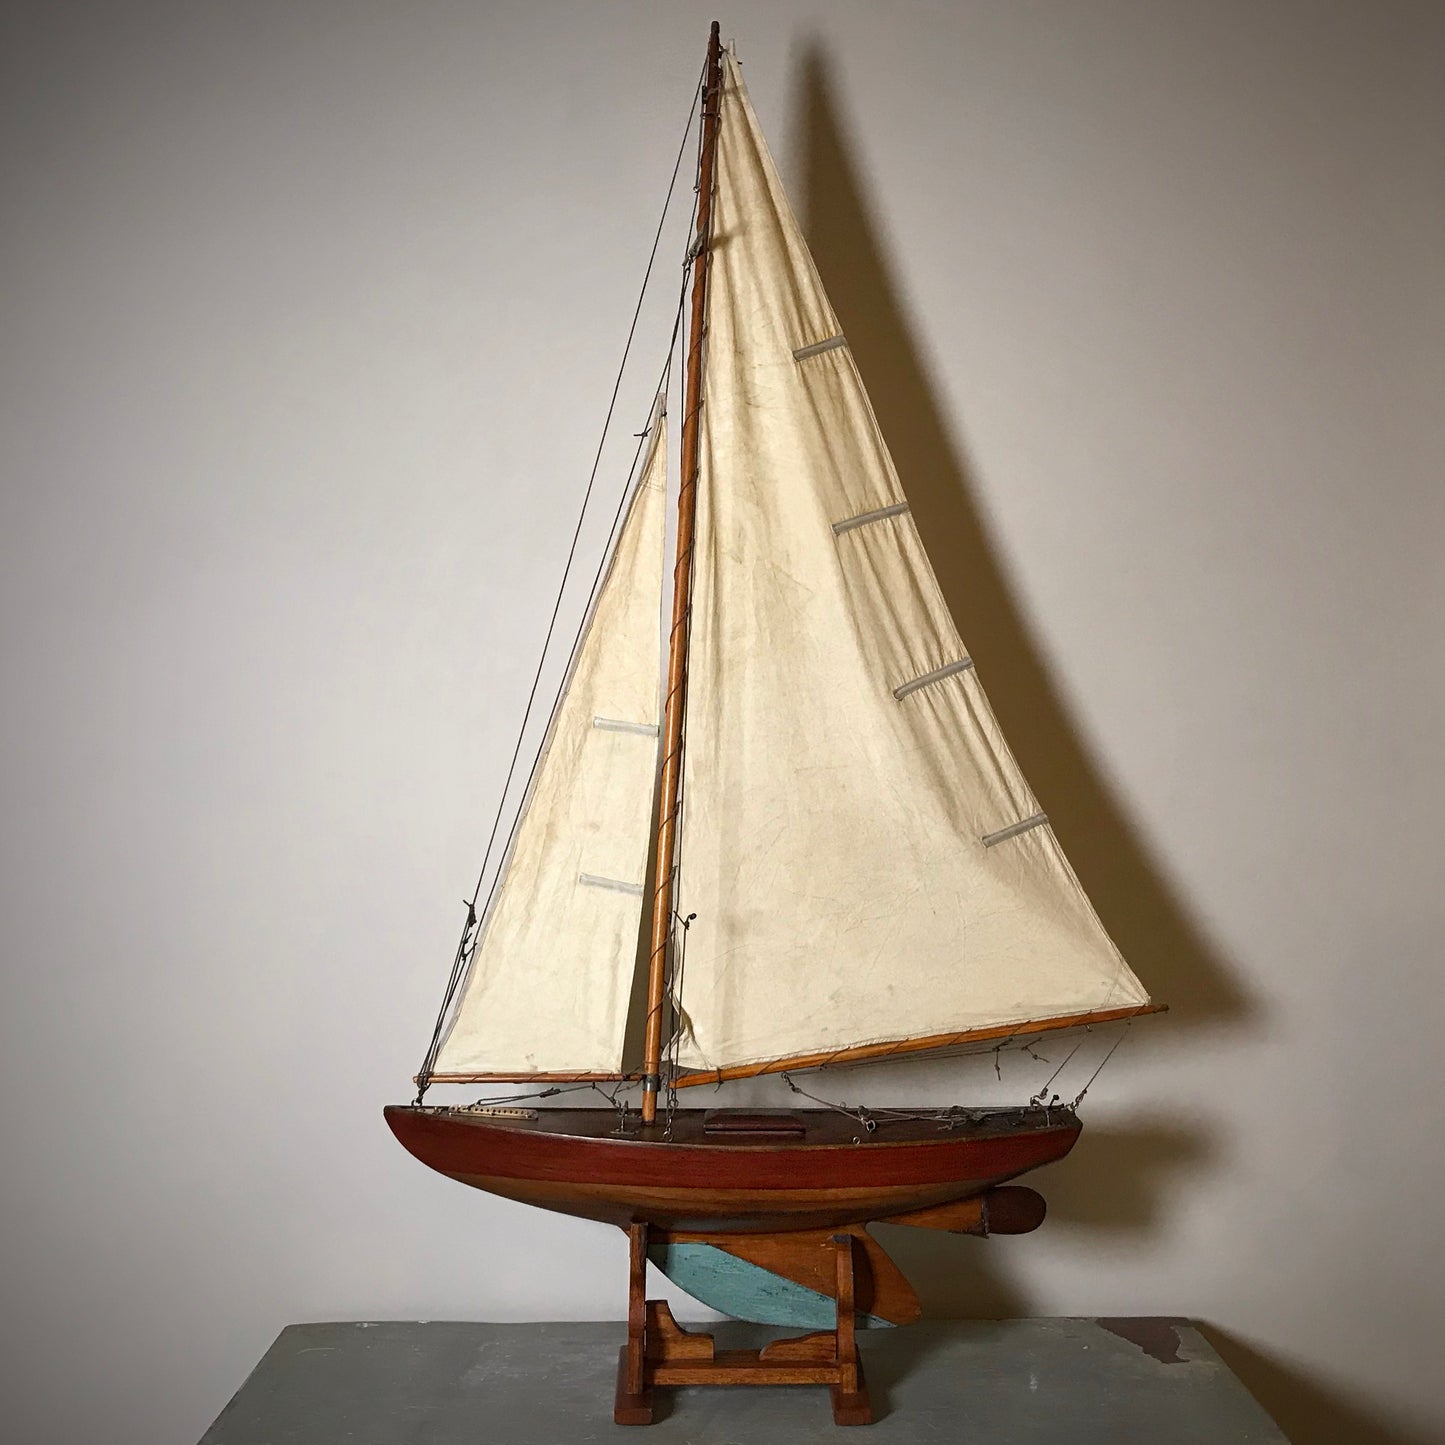 WJ Daniels Designed Racing Yacht “ANNIE” c.1930